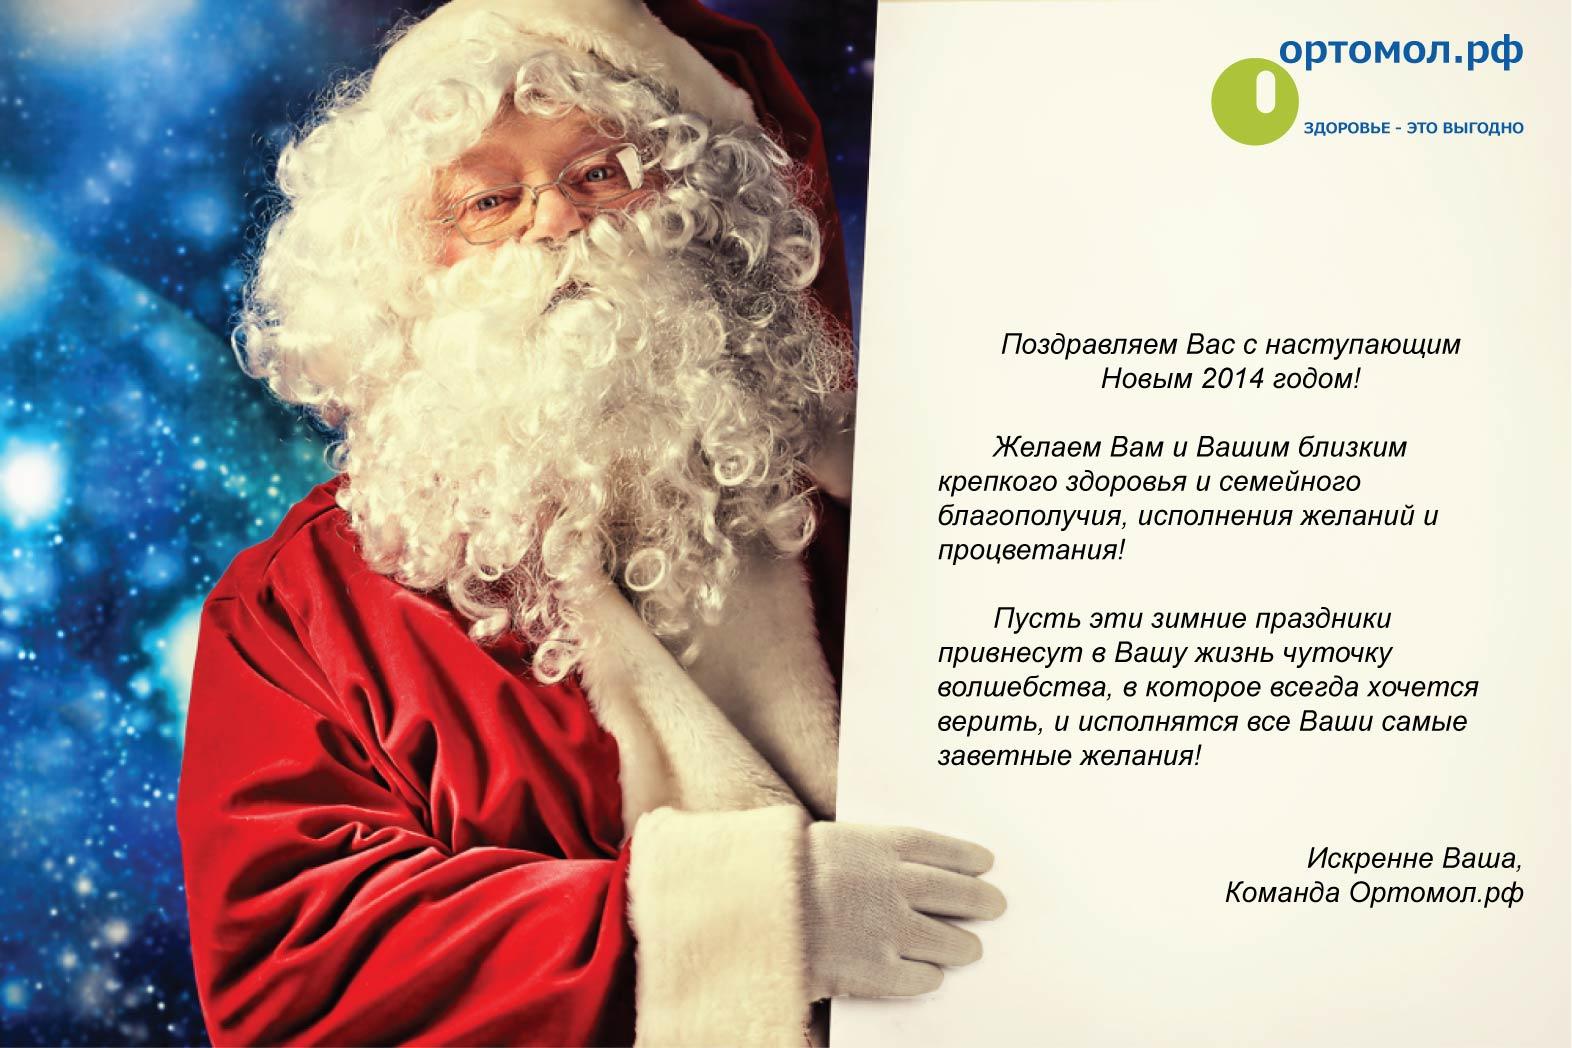 Ортомол.рф поздравляет с Новым 2014 годом